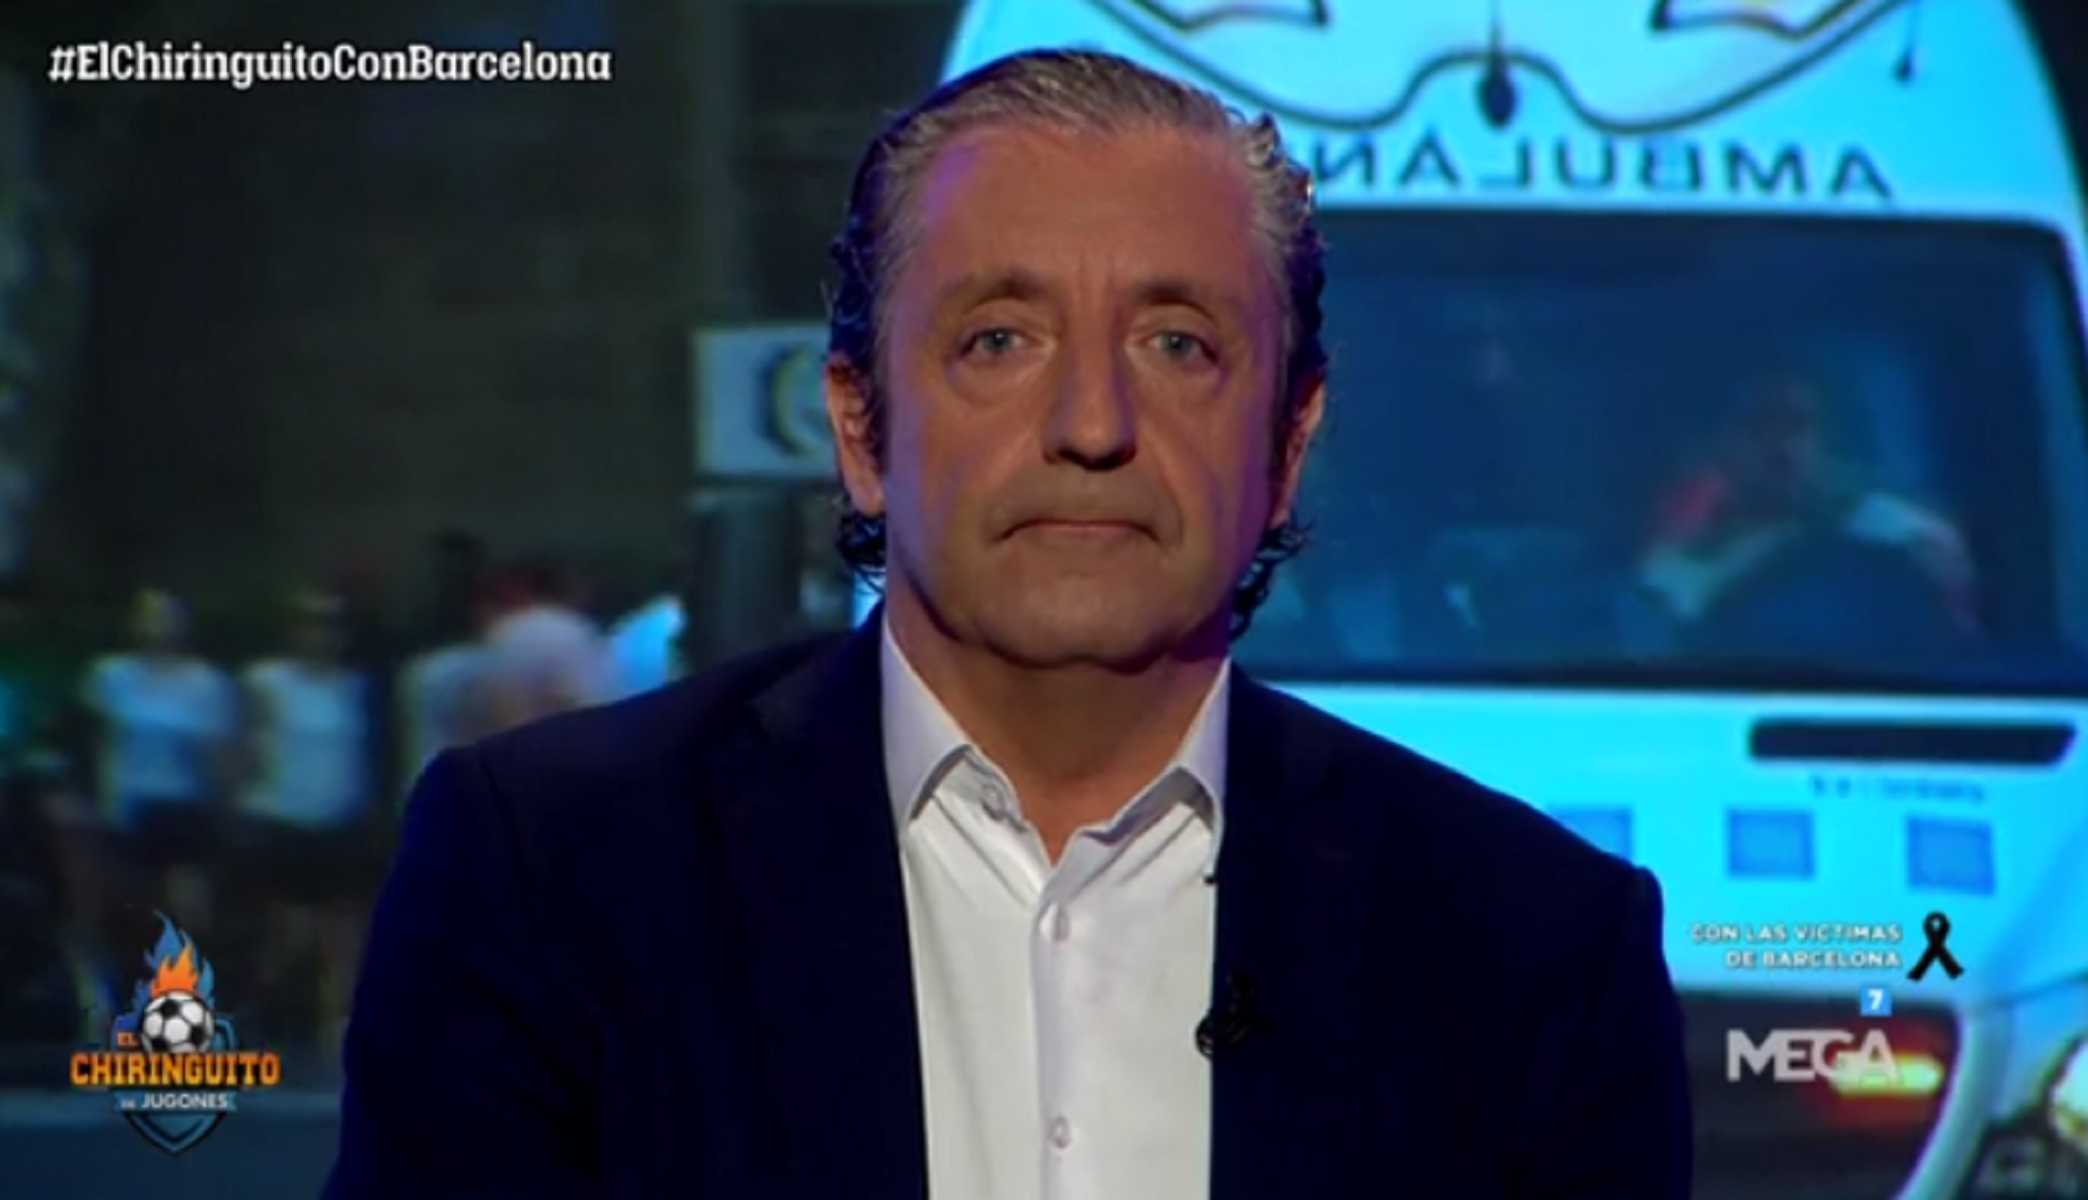 El discurso más difícil de Josep Pedrerol: "un petó, Barcelona"